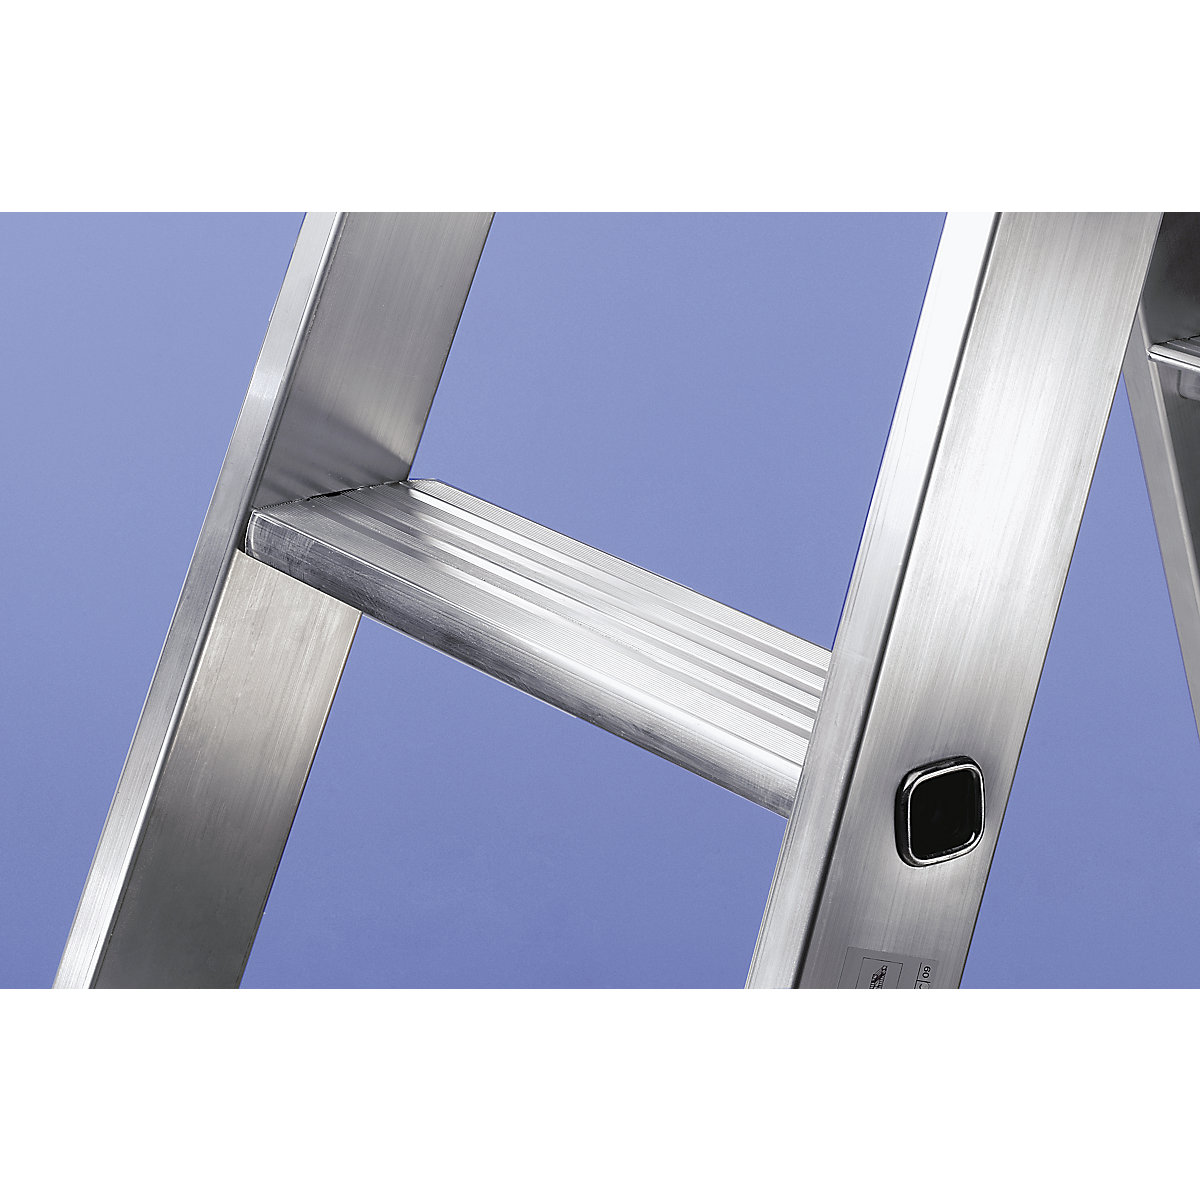 Escalera tipo tijera de peldaños planos, ascenso por ambos lados – MUNK (Imagen del producto 21)-20